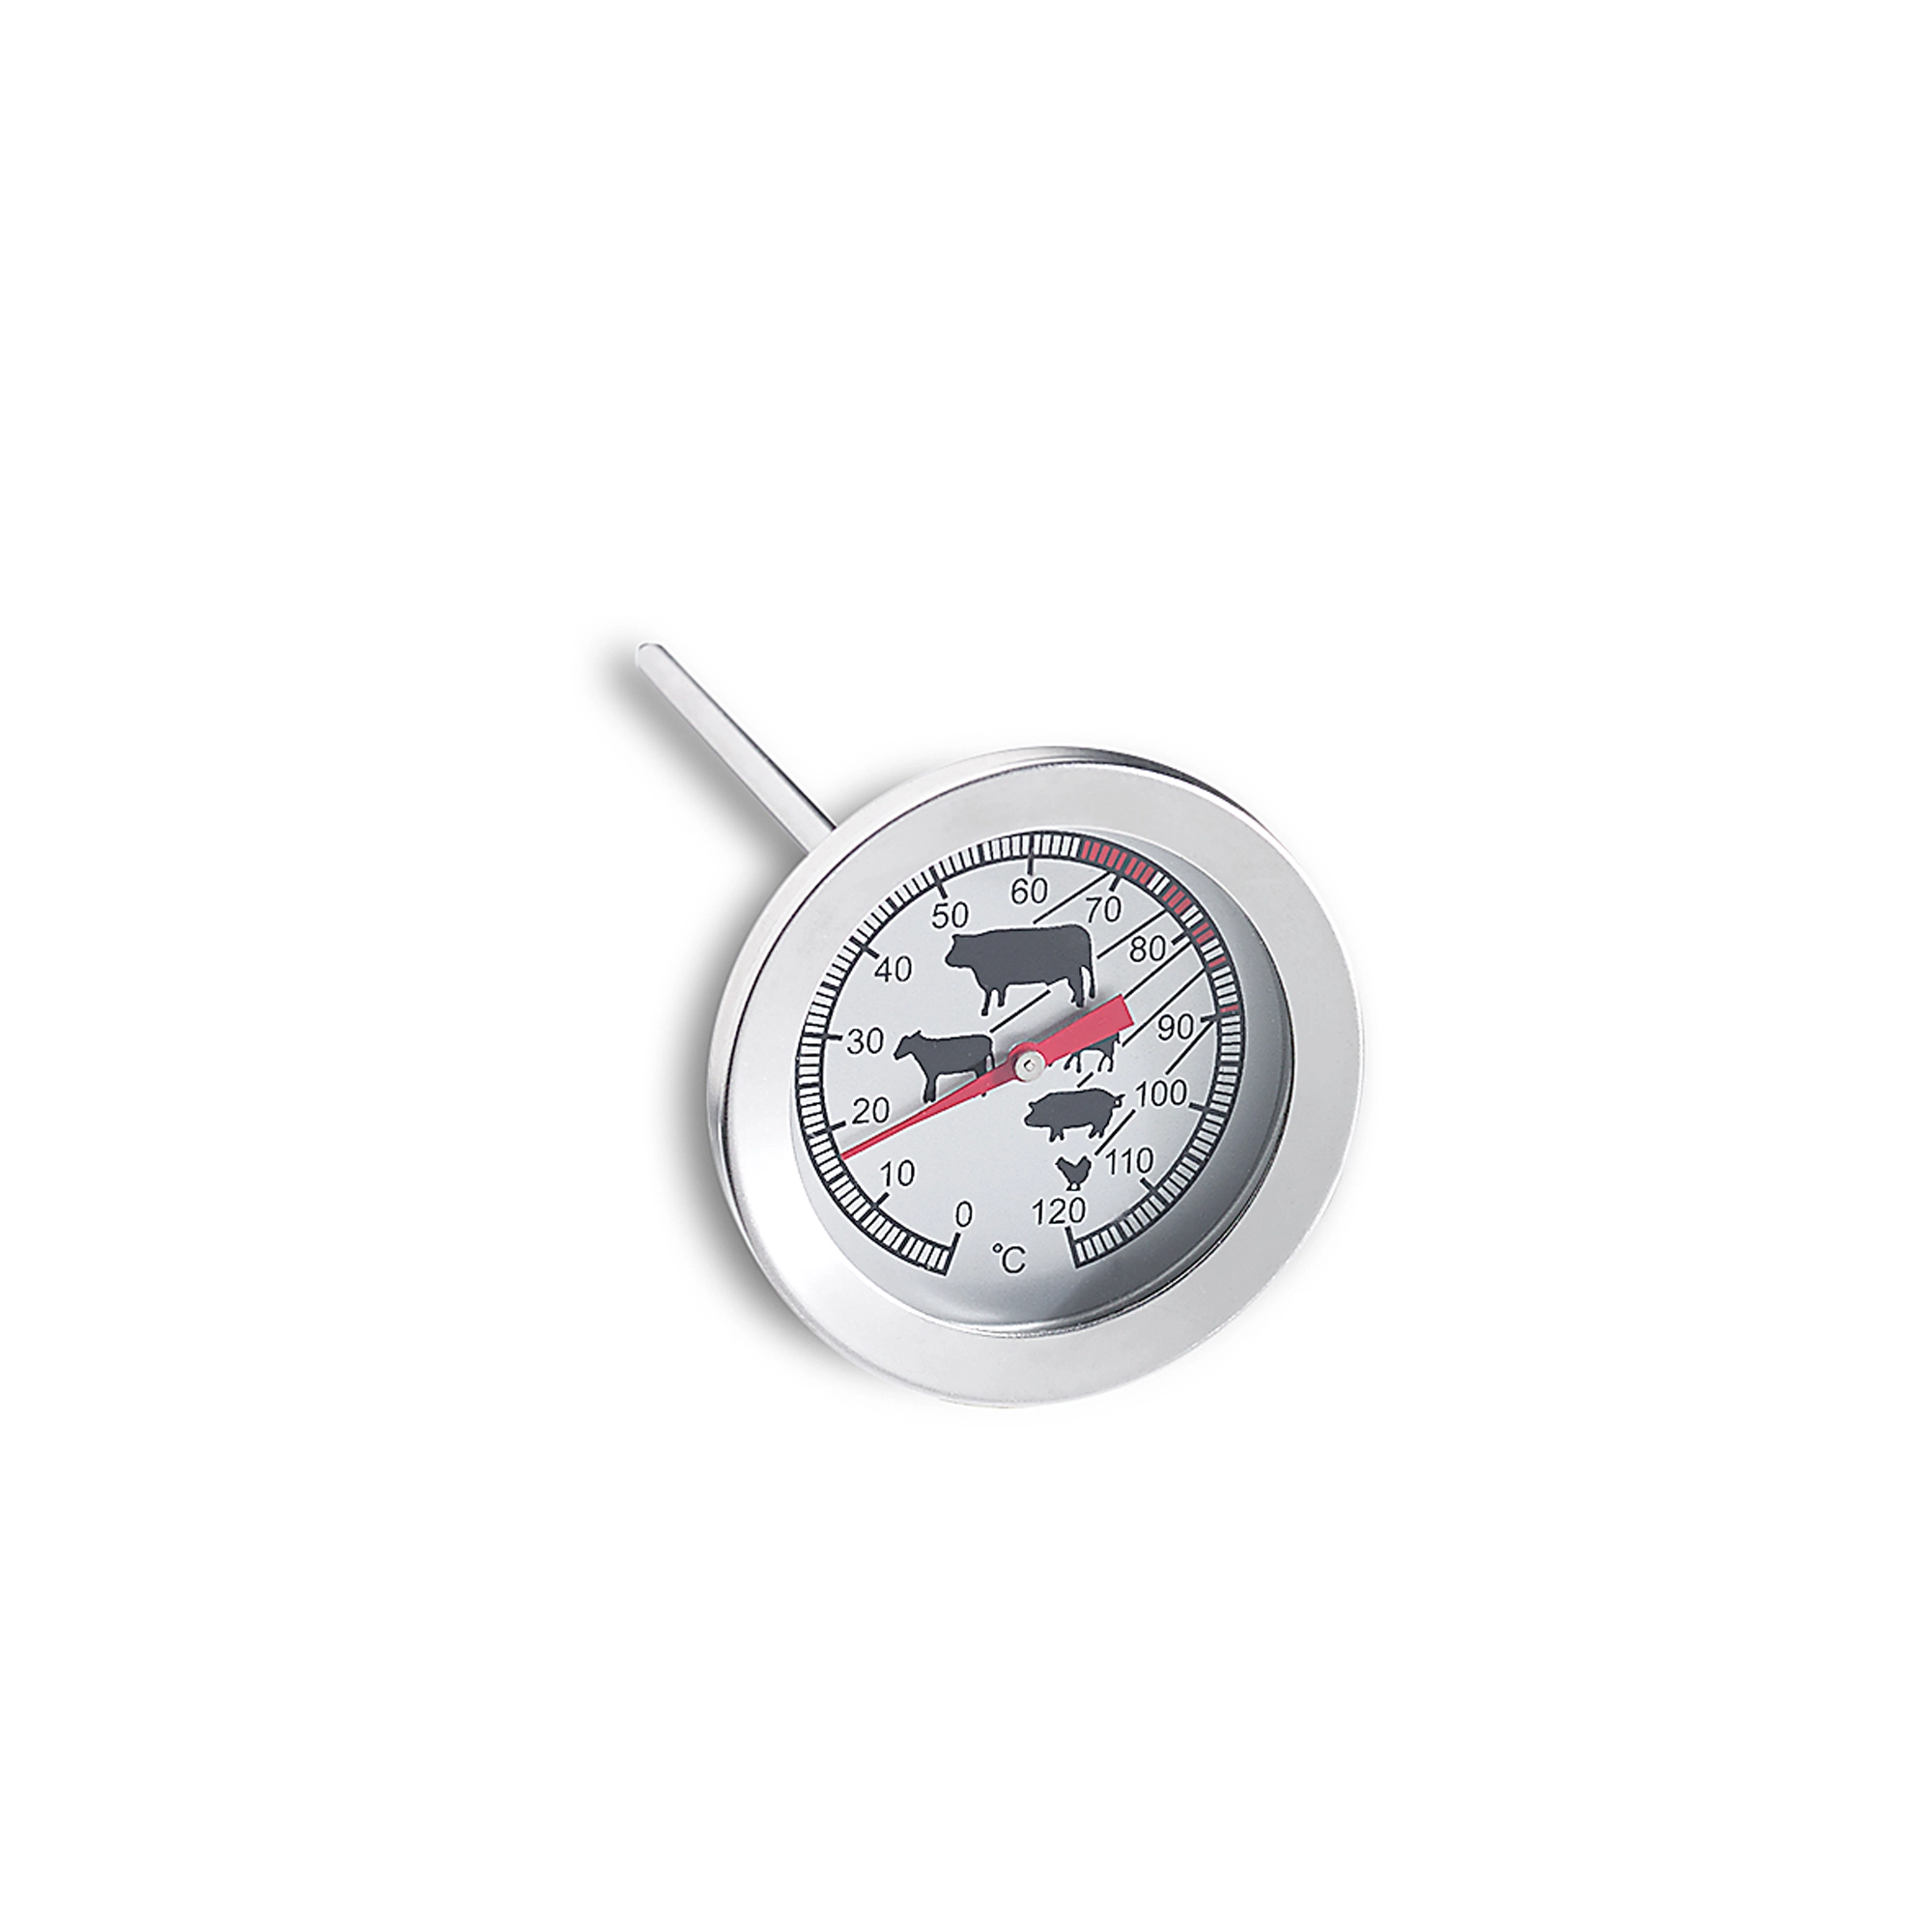 Möller Therm Braten-Thermometer 15,5 cm kaufen bei OBI